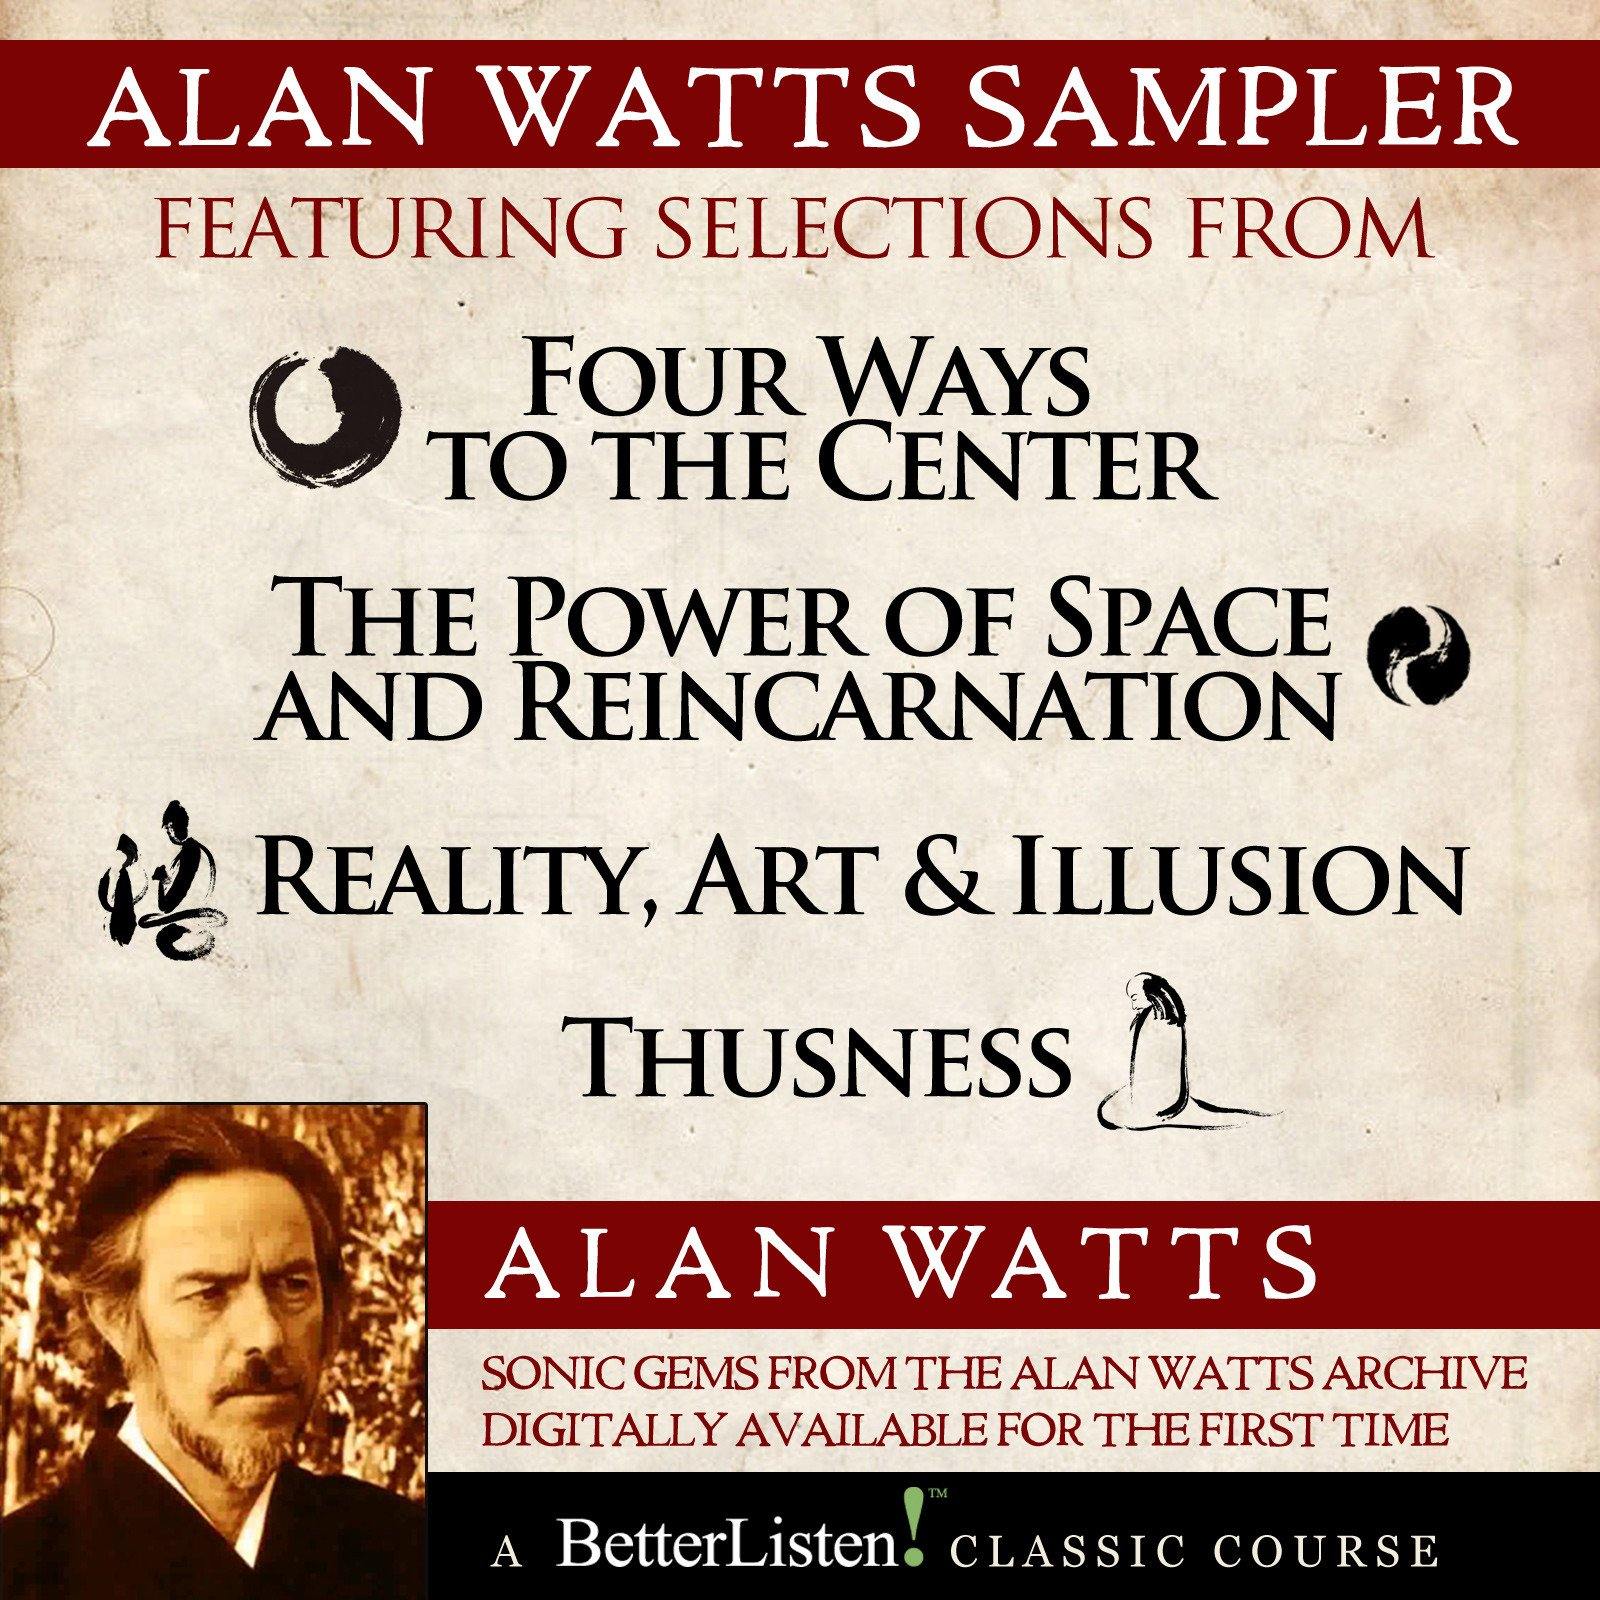 Alan Watts Sampler Audio Program Alan Watts - BetterListen!